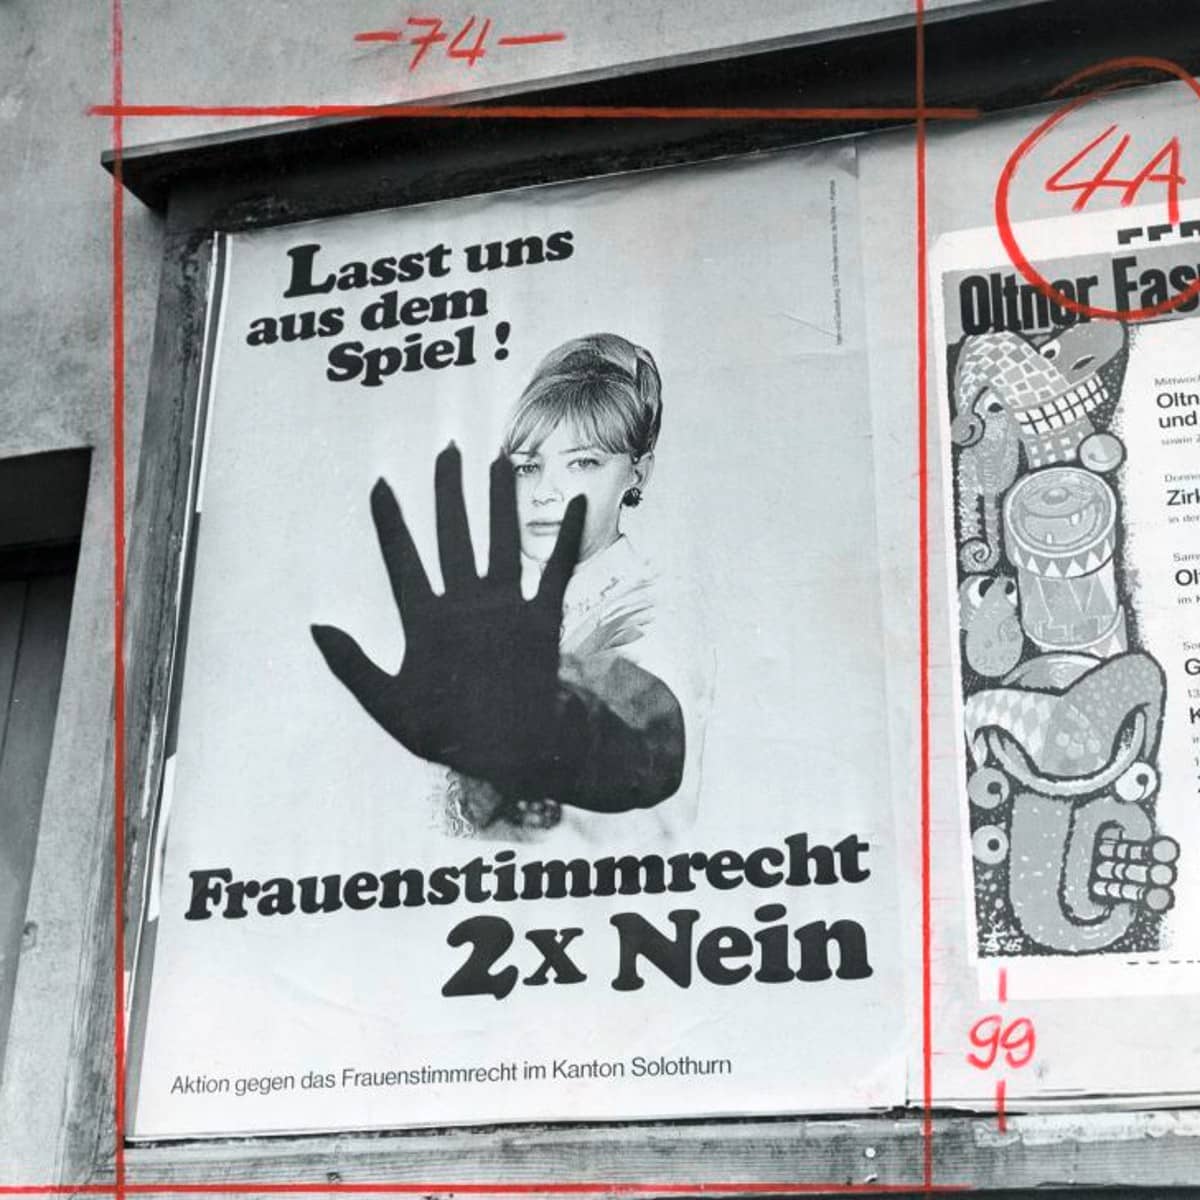 Ein Plakat gegen das Frauenstimmrecht zeigt eine Frau mit abwehrender Handhaltung und dem Text "Lasst uns aus dem Spiel! Frauenstimmrecht 2 mal nein!"